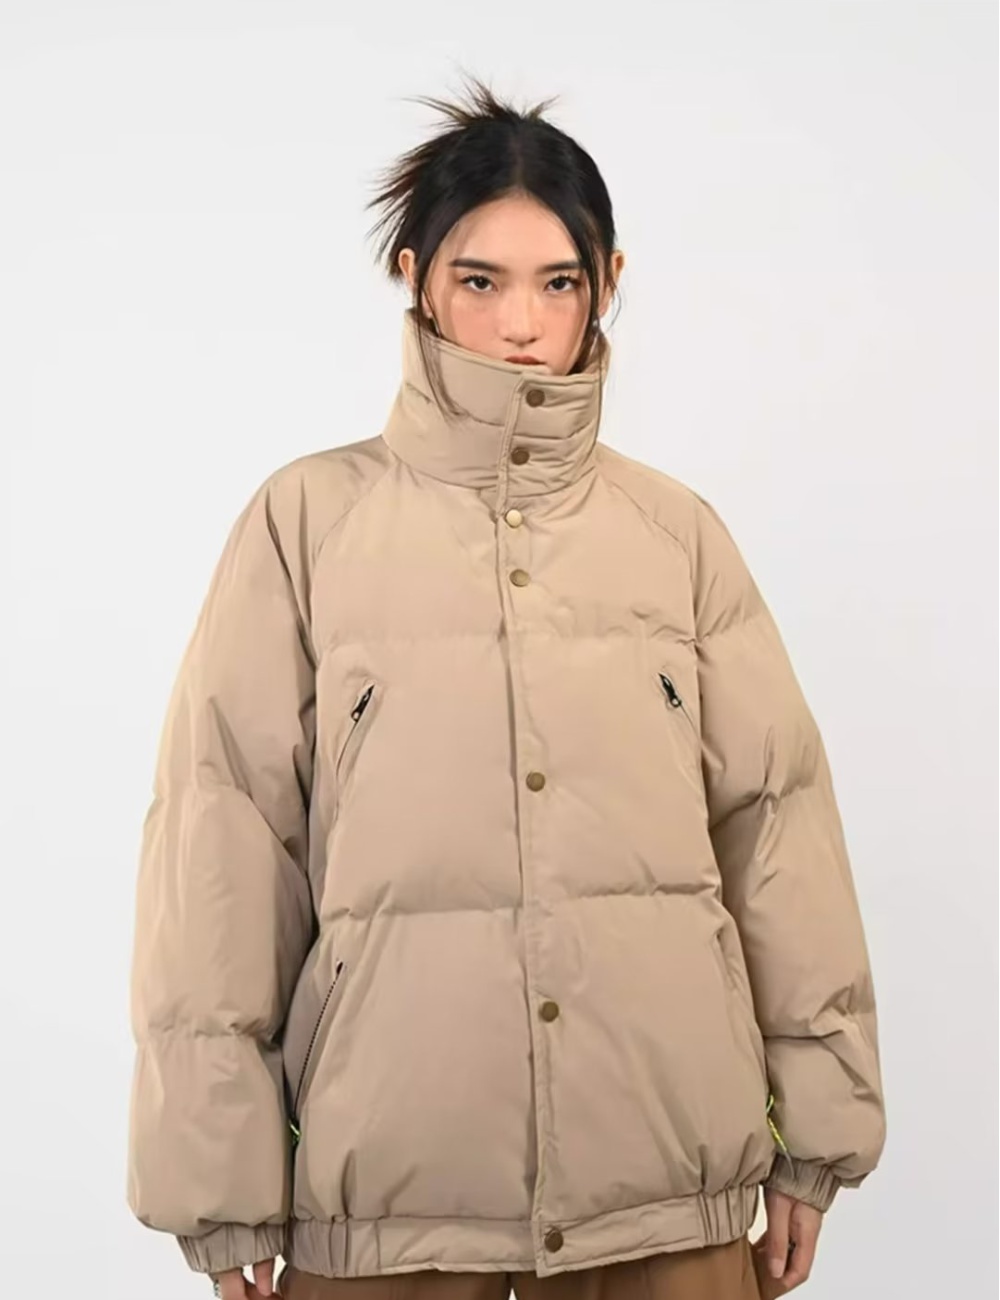 Short coat winter cotton coat for women